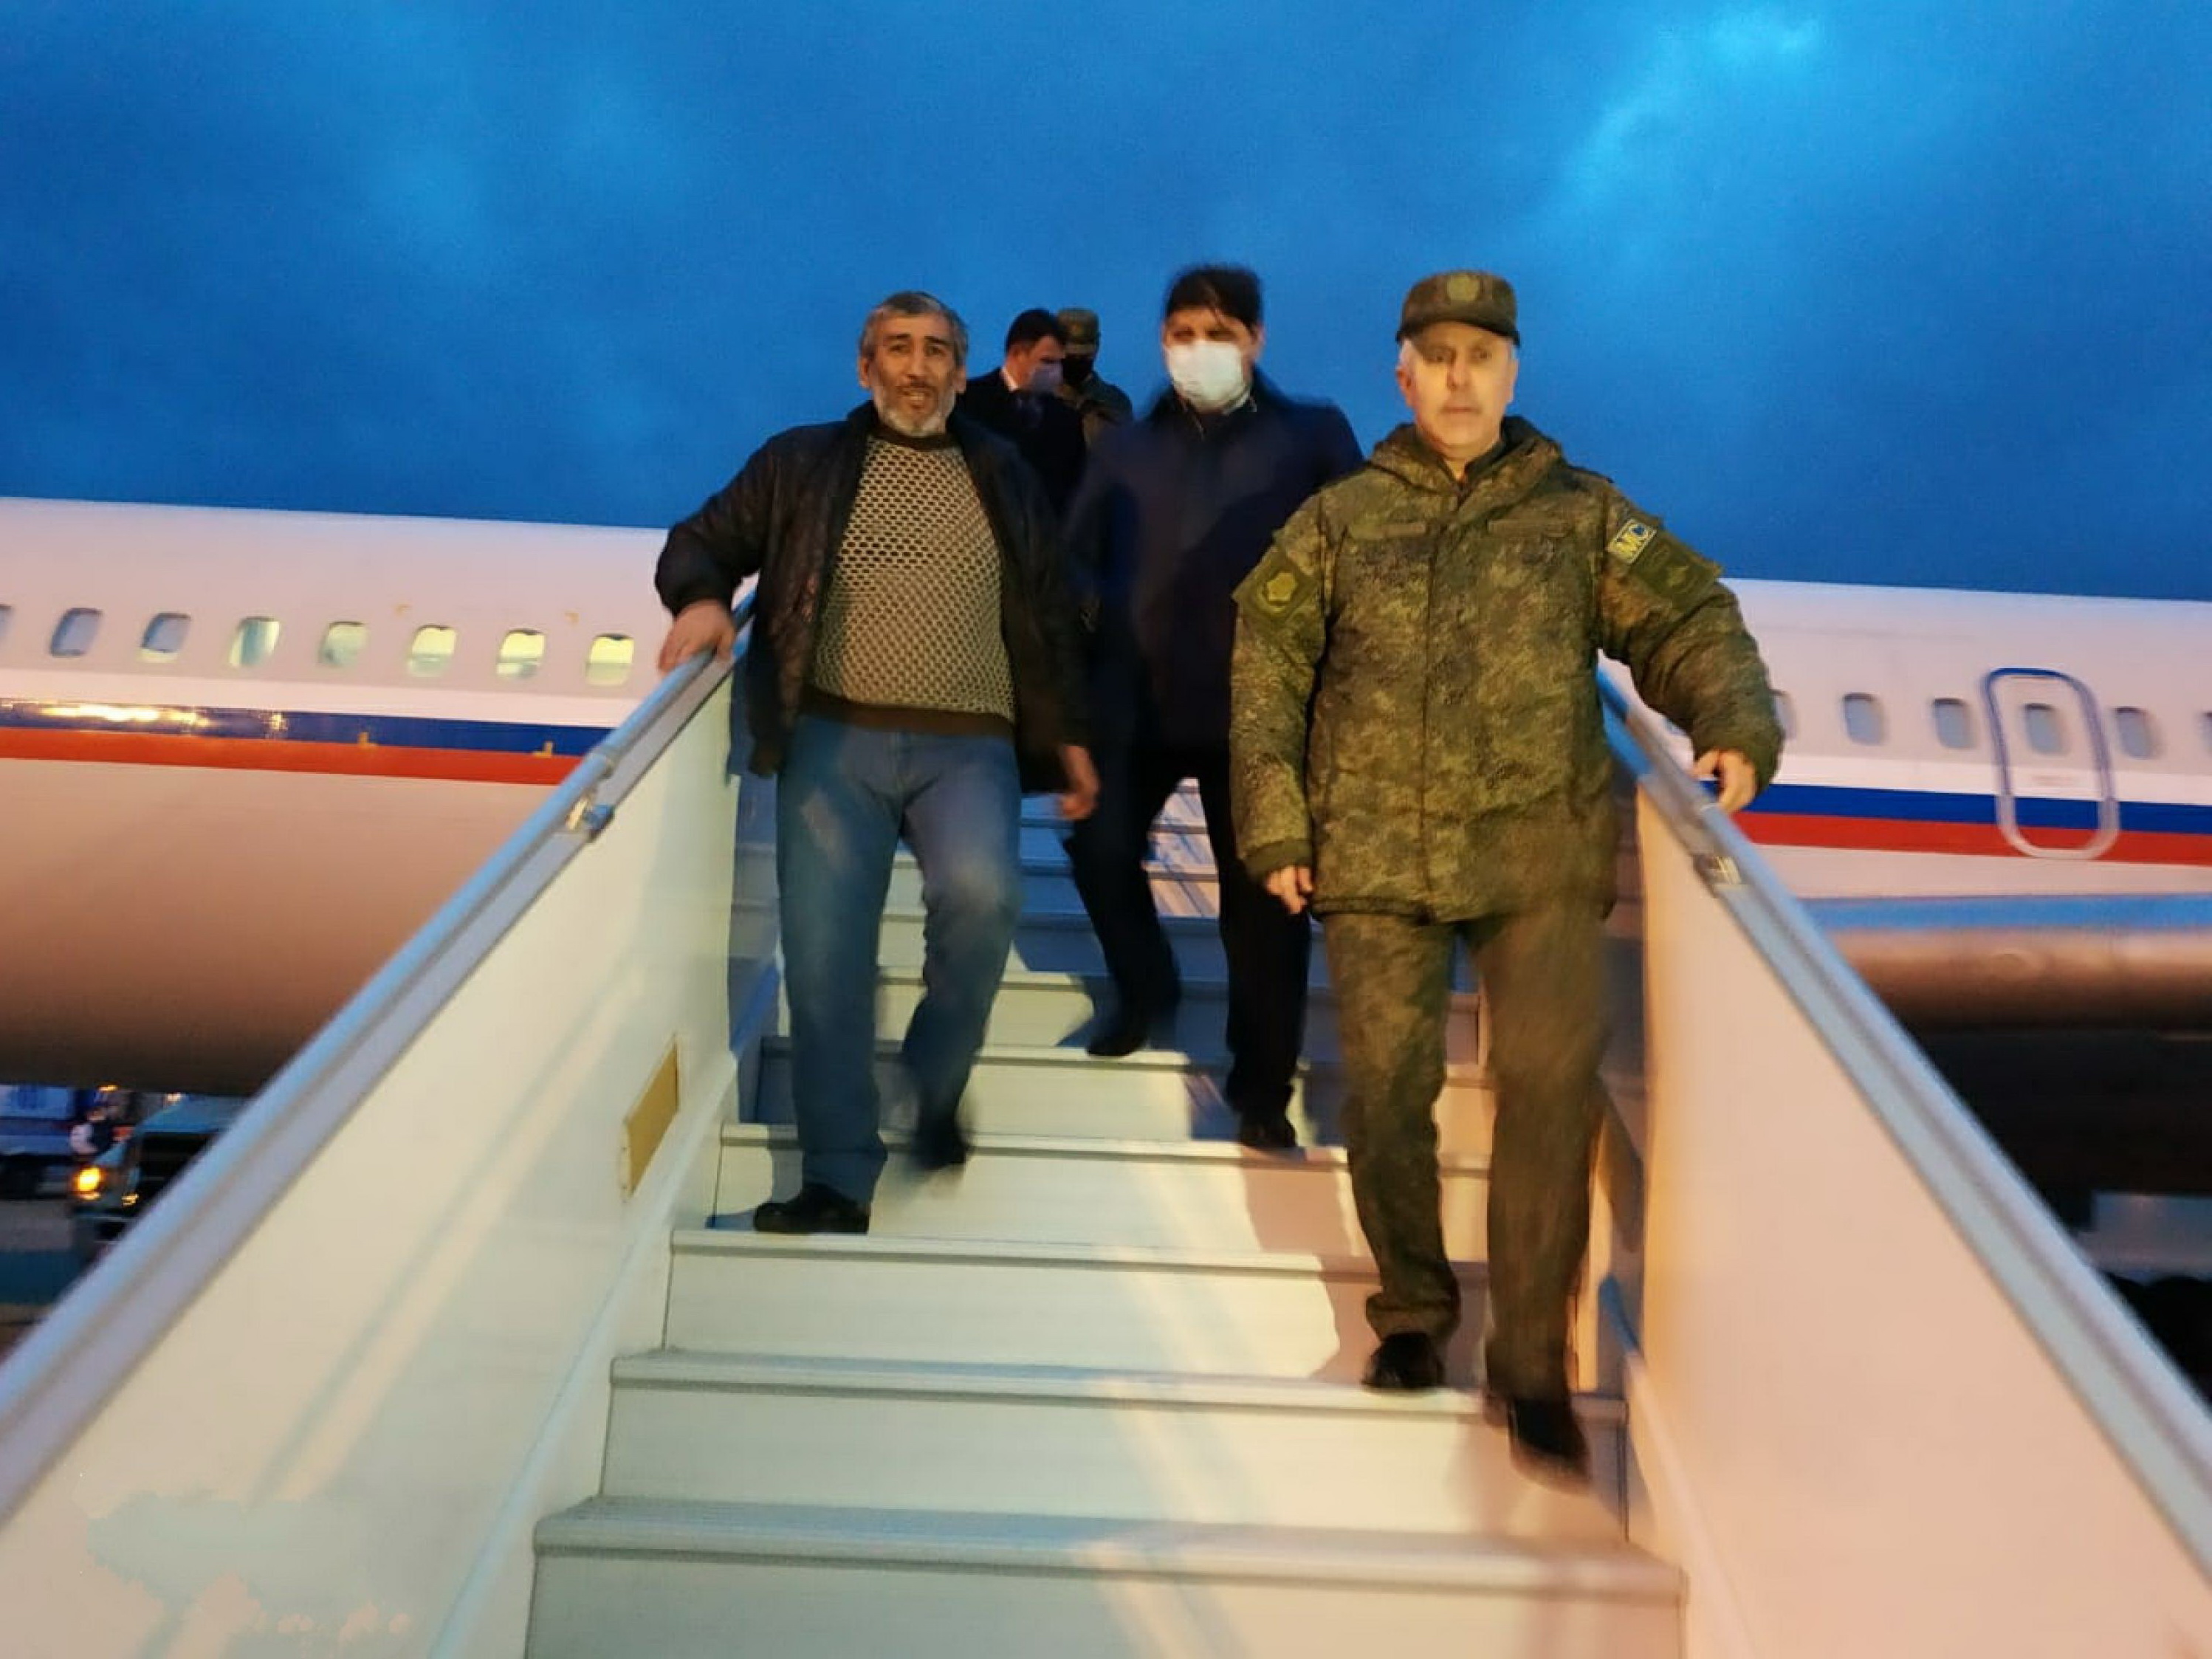 Названы имена 12 военнопленных, освобожденных и возвращенных в Азербайджан 14 декабря - СПИСОК